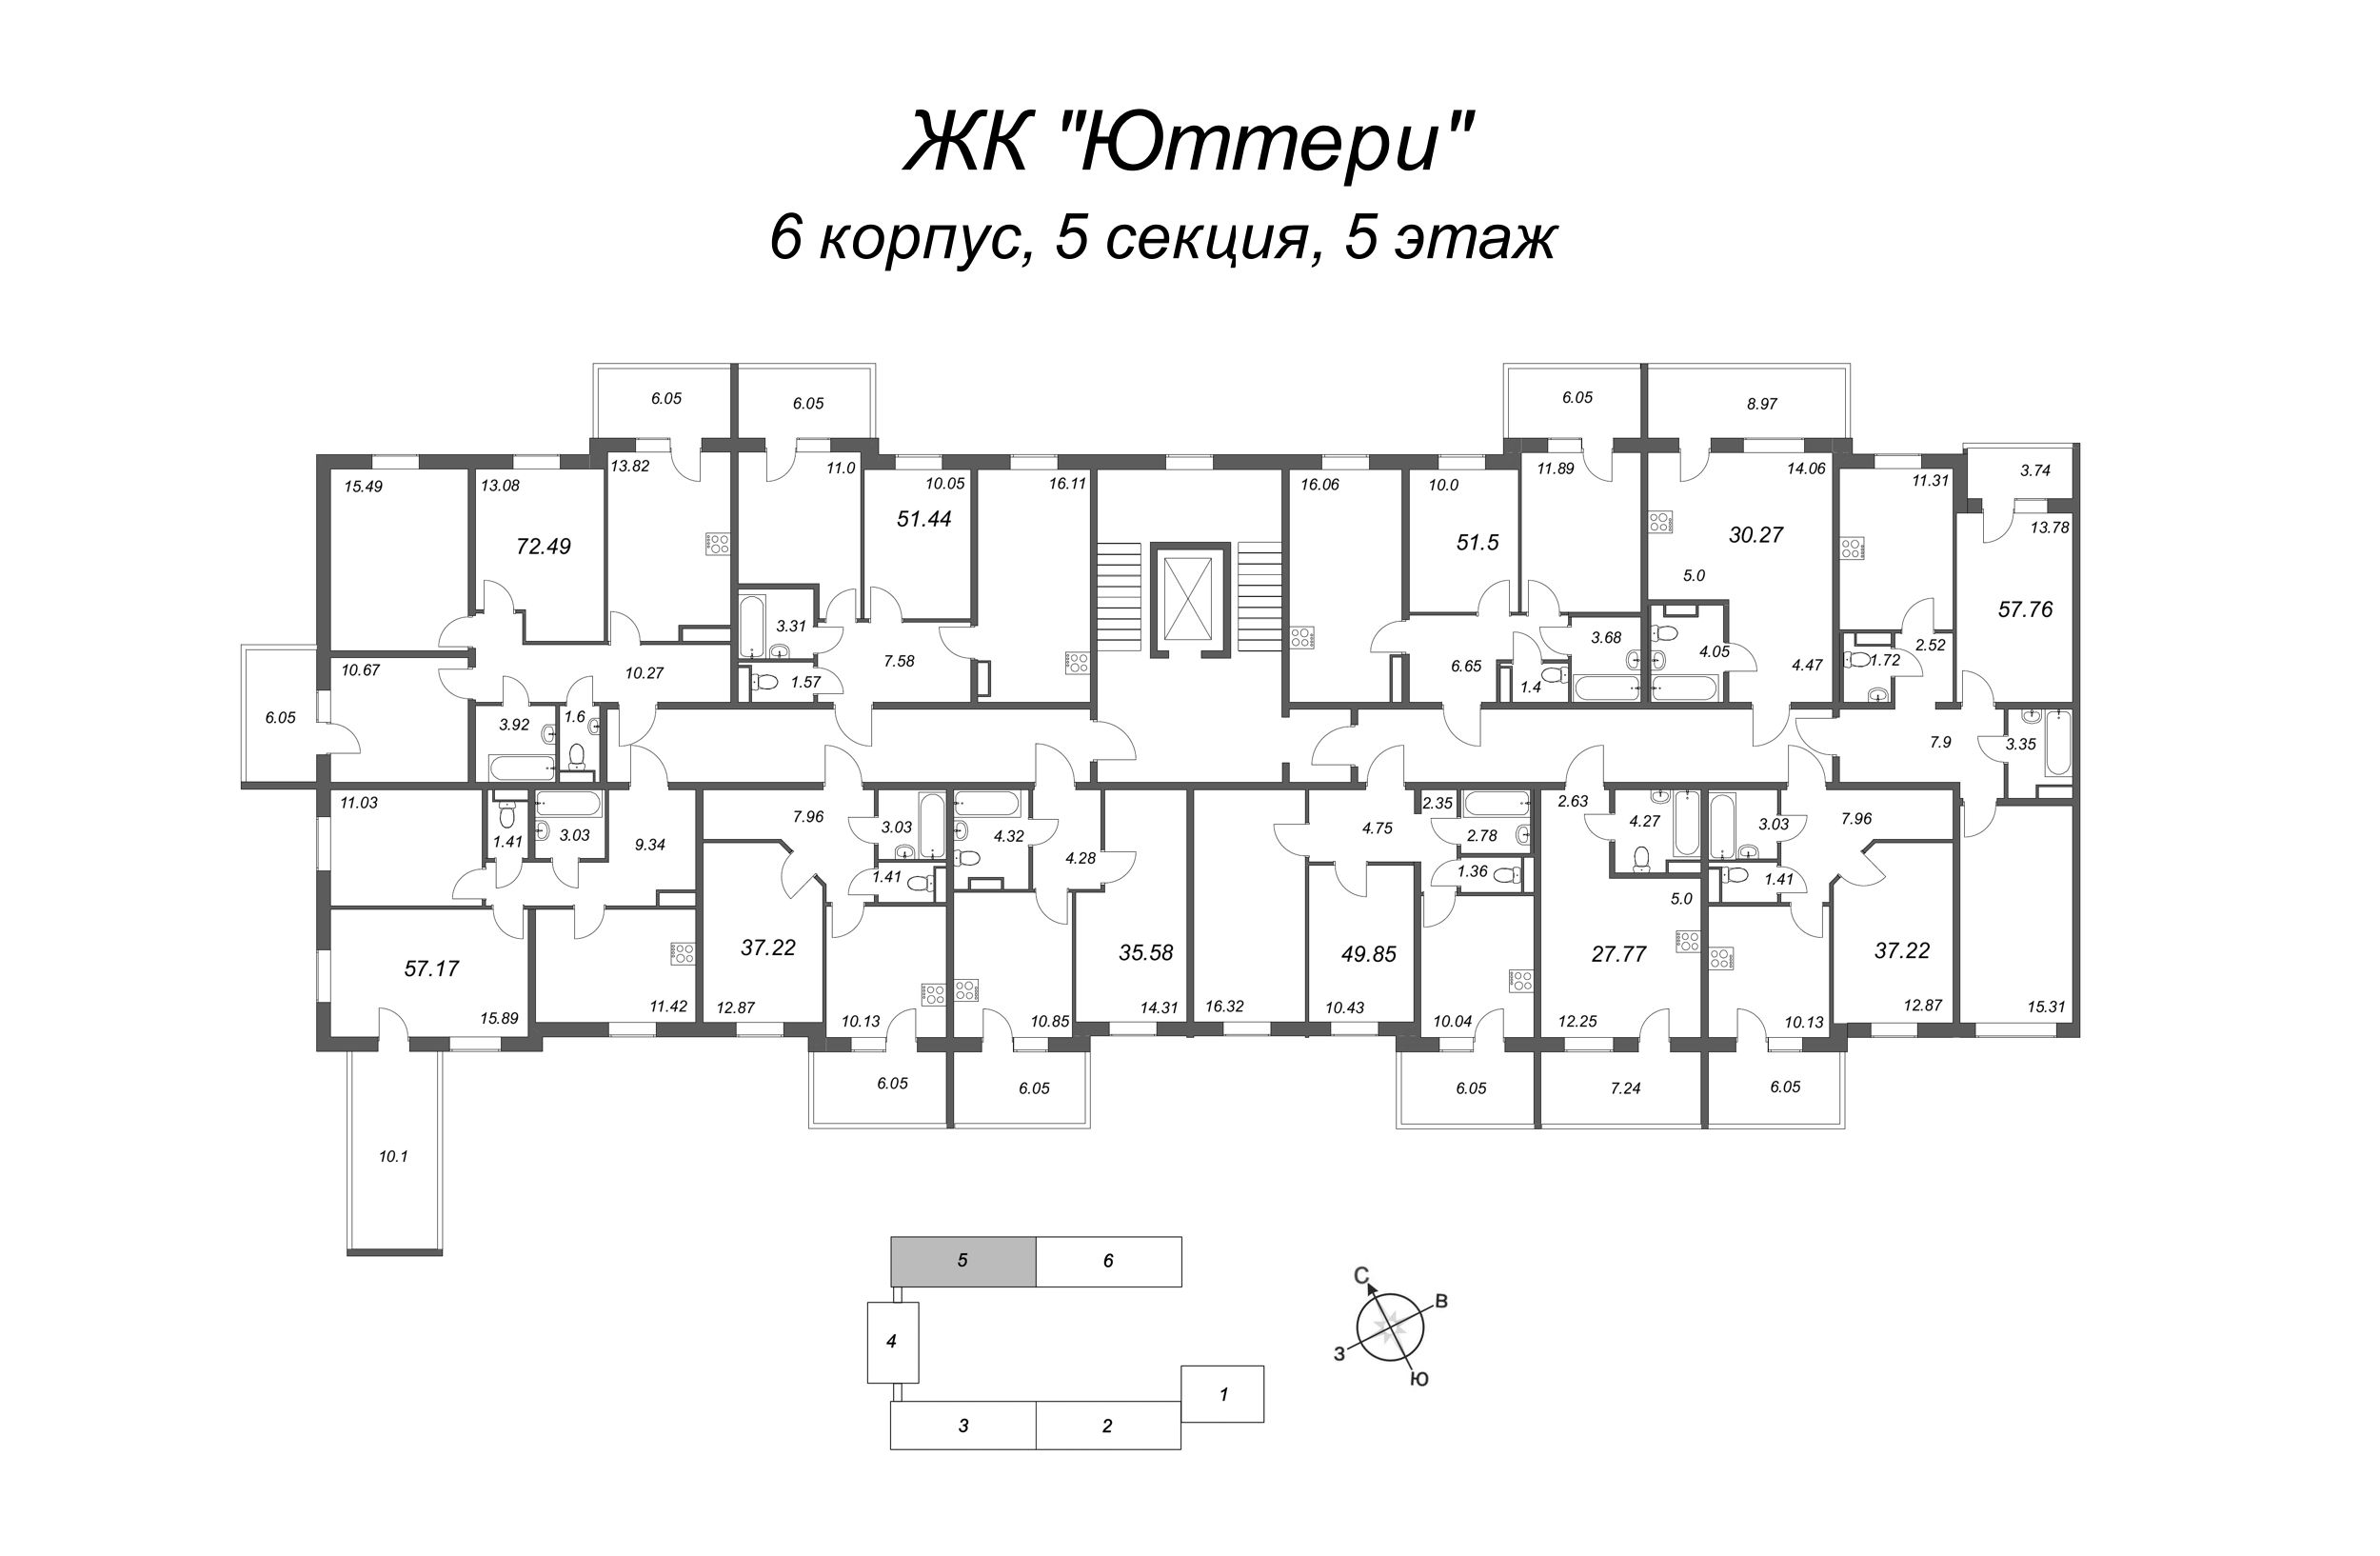 Квартира-студия, 27.58 м² в ЖК "Юттери" - планировка этажа